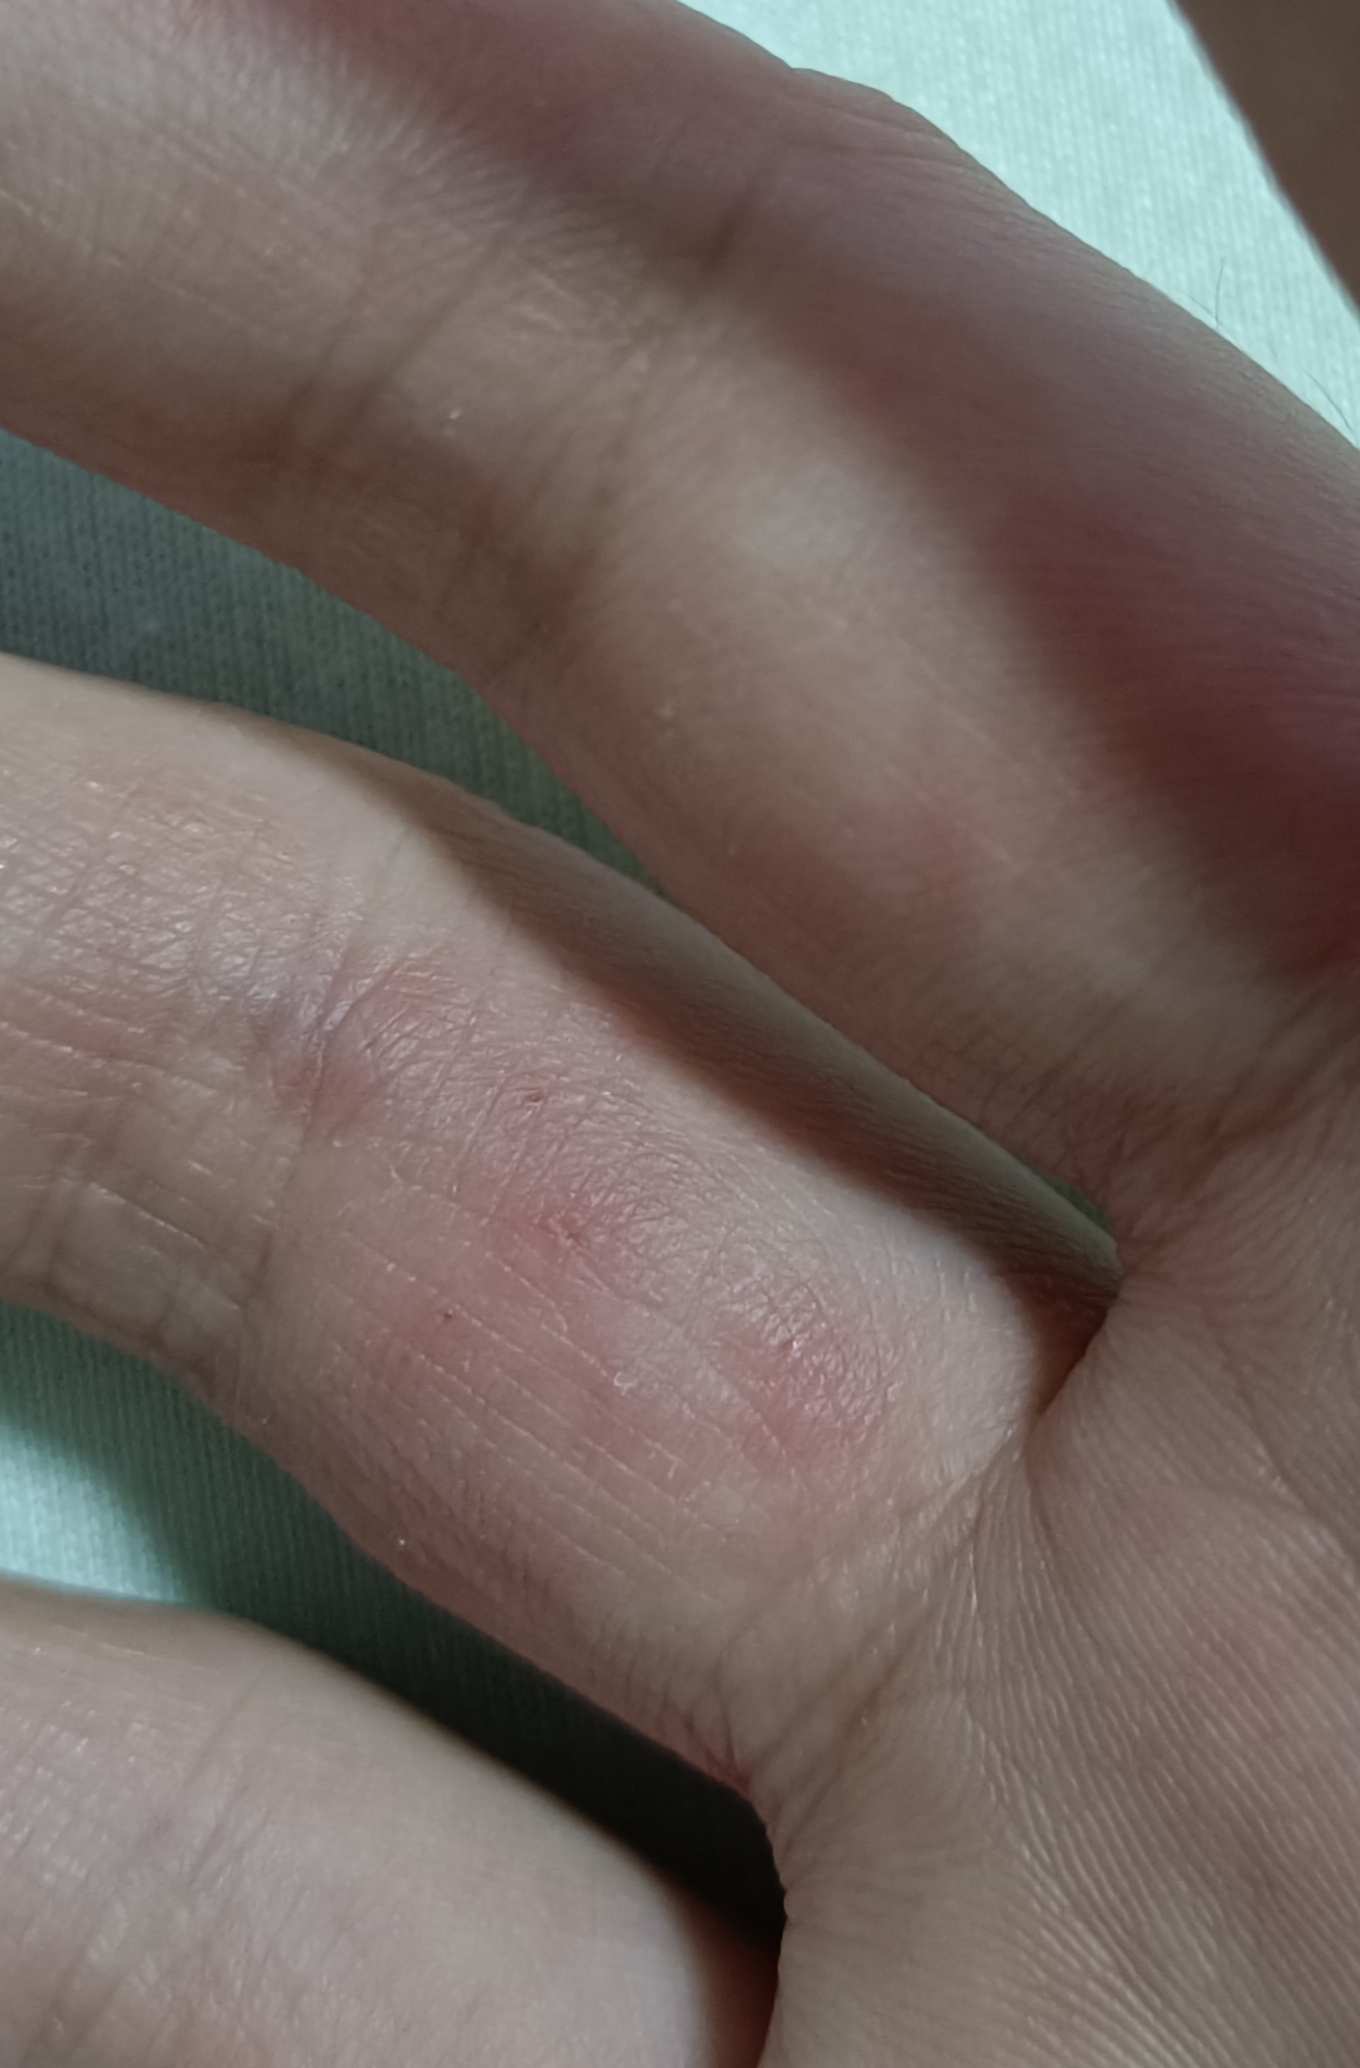 双手手指湿疹,关节处尤为严重,有水泡,很痒,已经三年,每年夏_其他科室